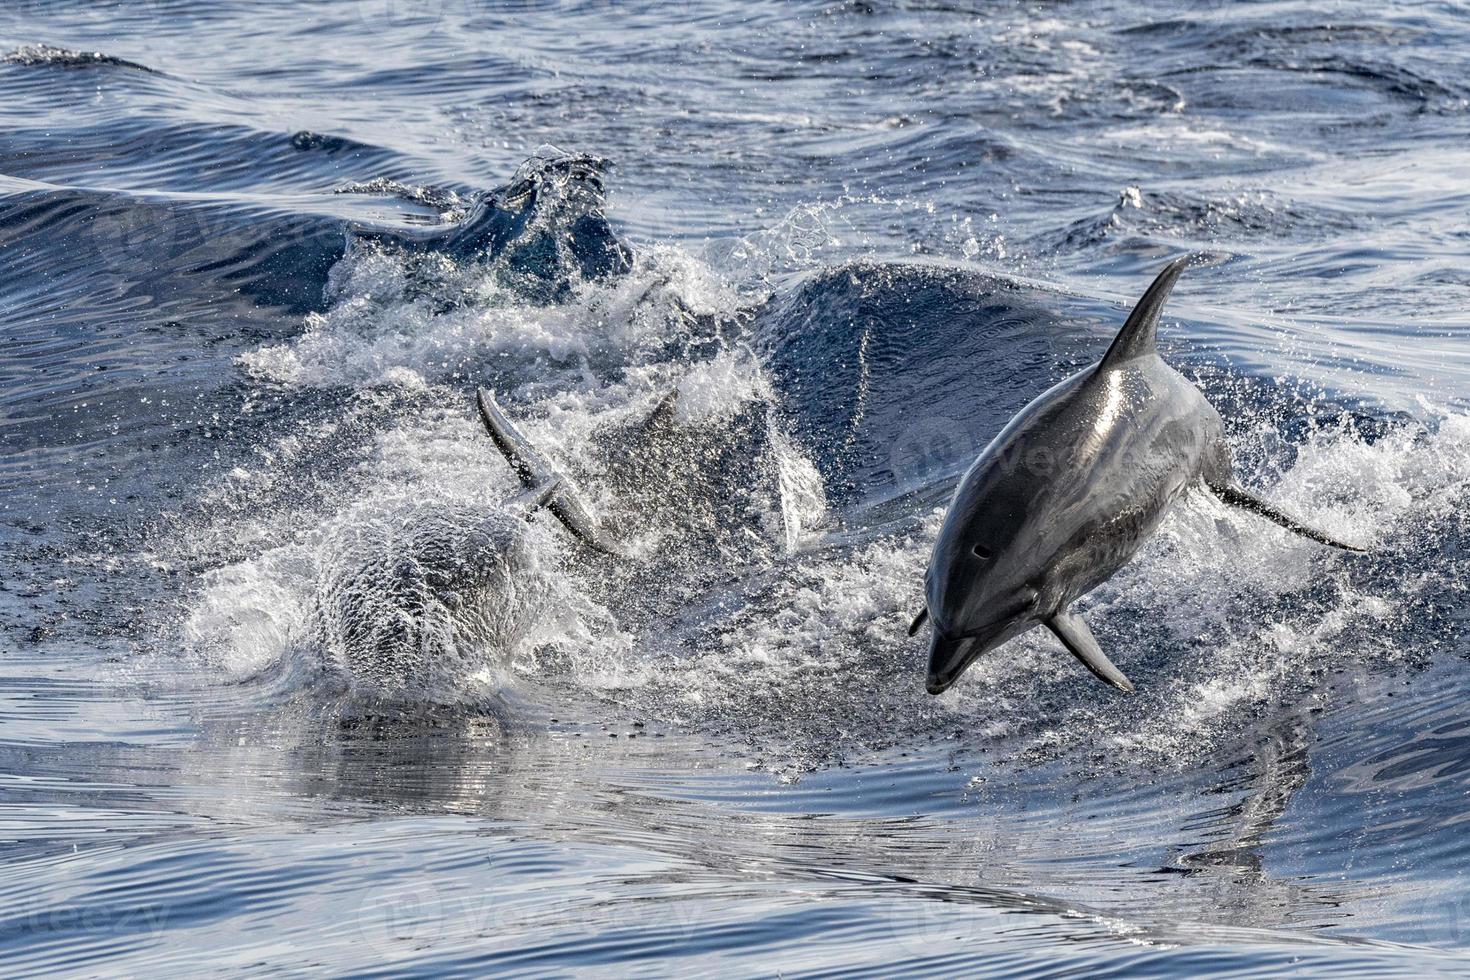 golfinho enquanto pula no mar azul profundo foto